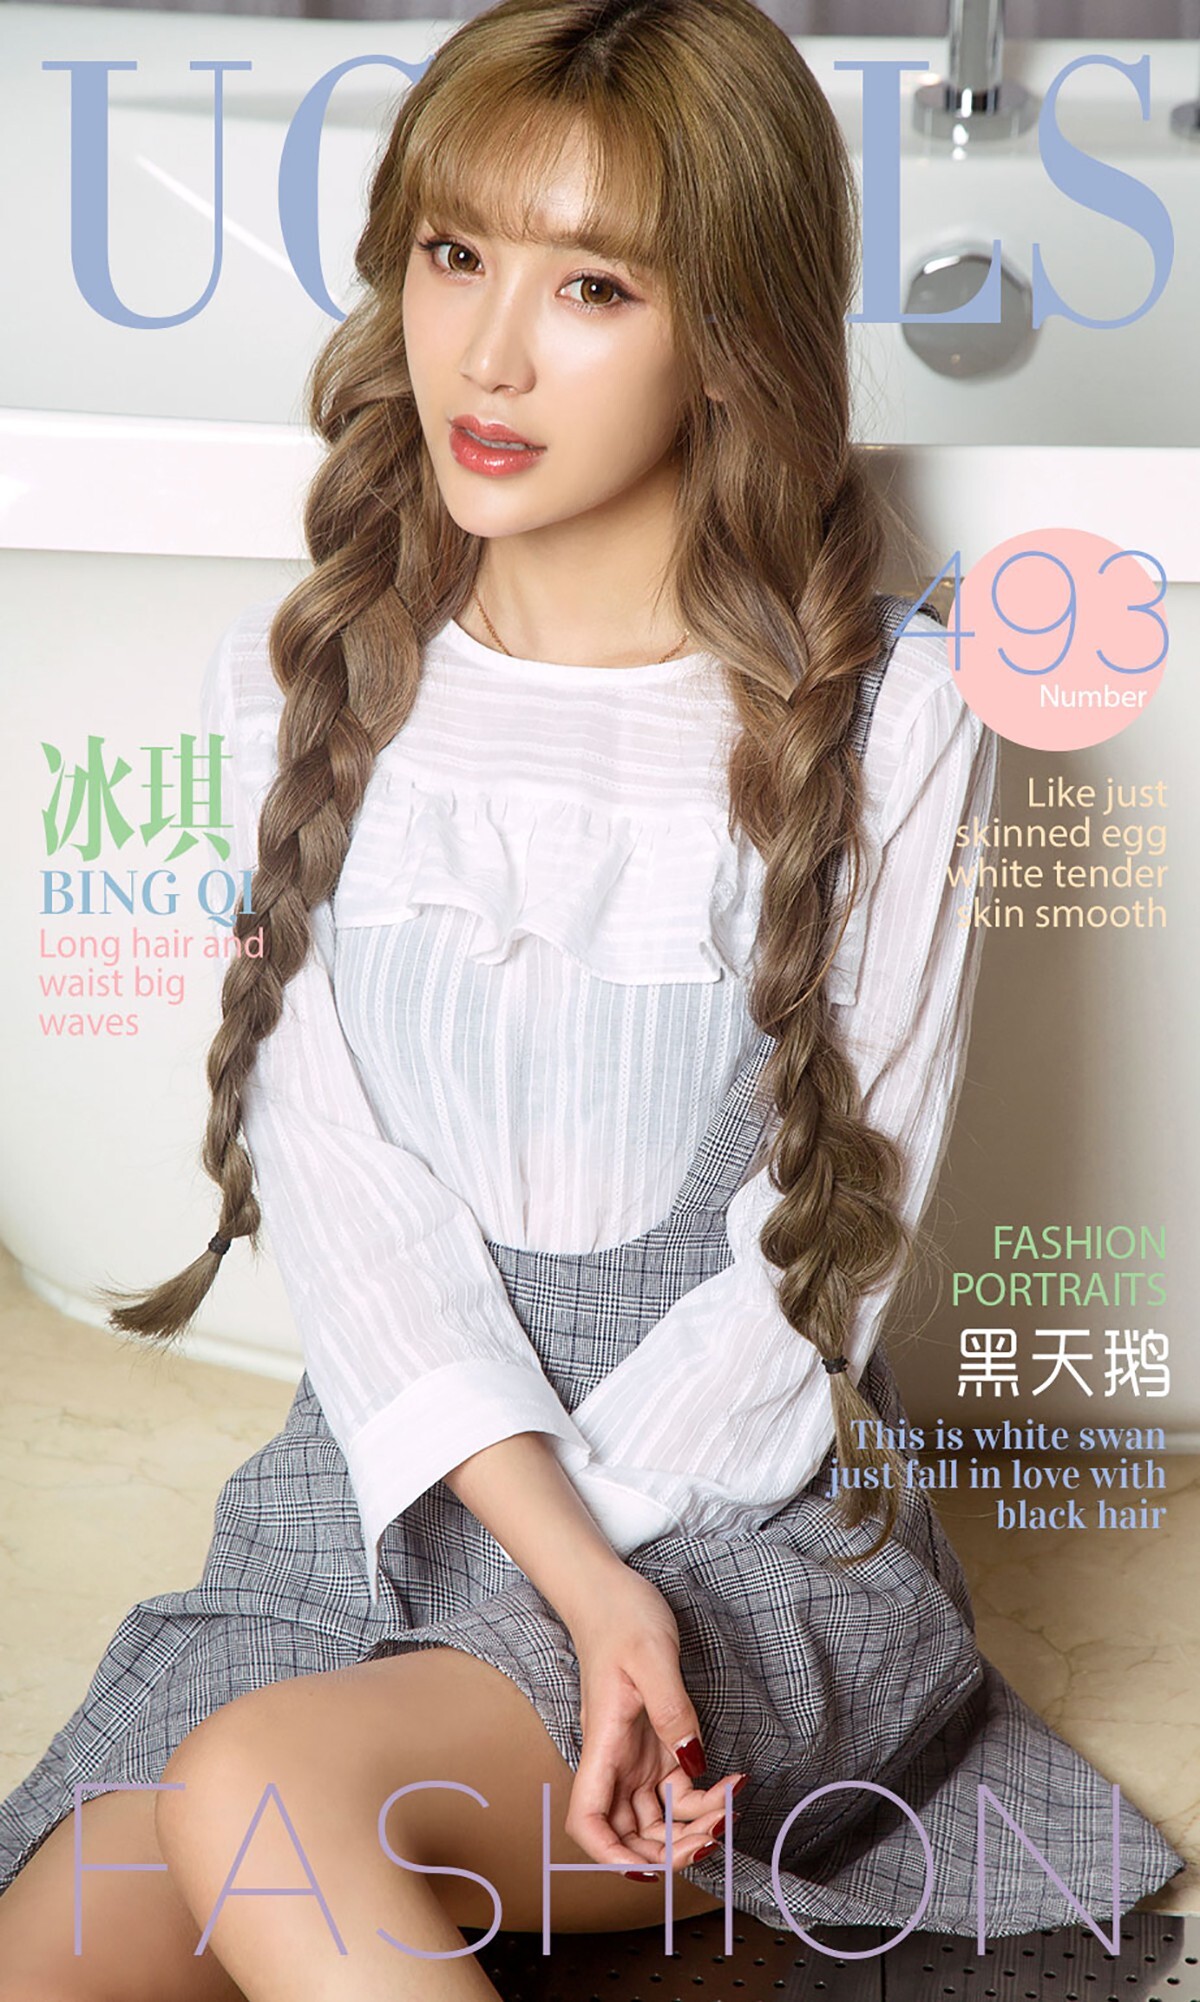 [ugirls love things] 2016 issue no.493 Bingqi